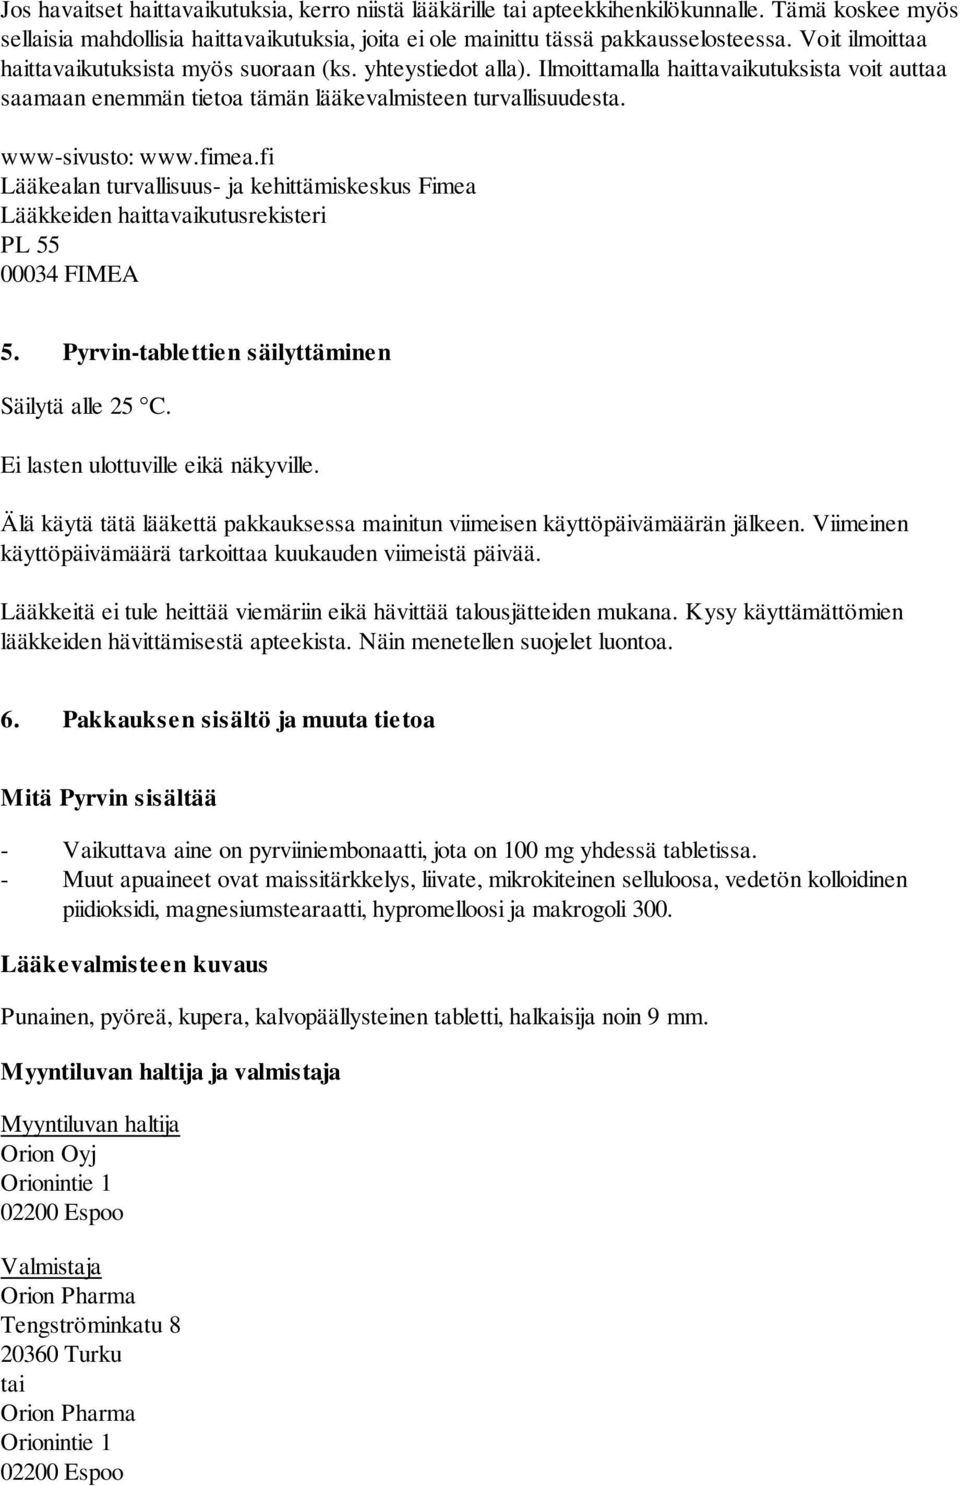 fimea.fi Lääkealan turvallisuus- ja kehittämiskeskus Fimea Lääkkeiden haittavaikutusrekisteri PL 55 00034 FIMEA 5. Pyrvin-tablettien säilyttäminen Säilytä alle 25 C.